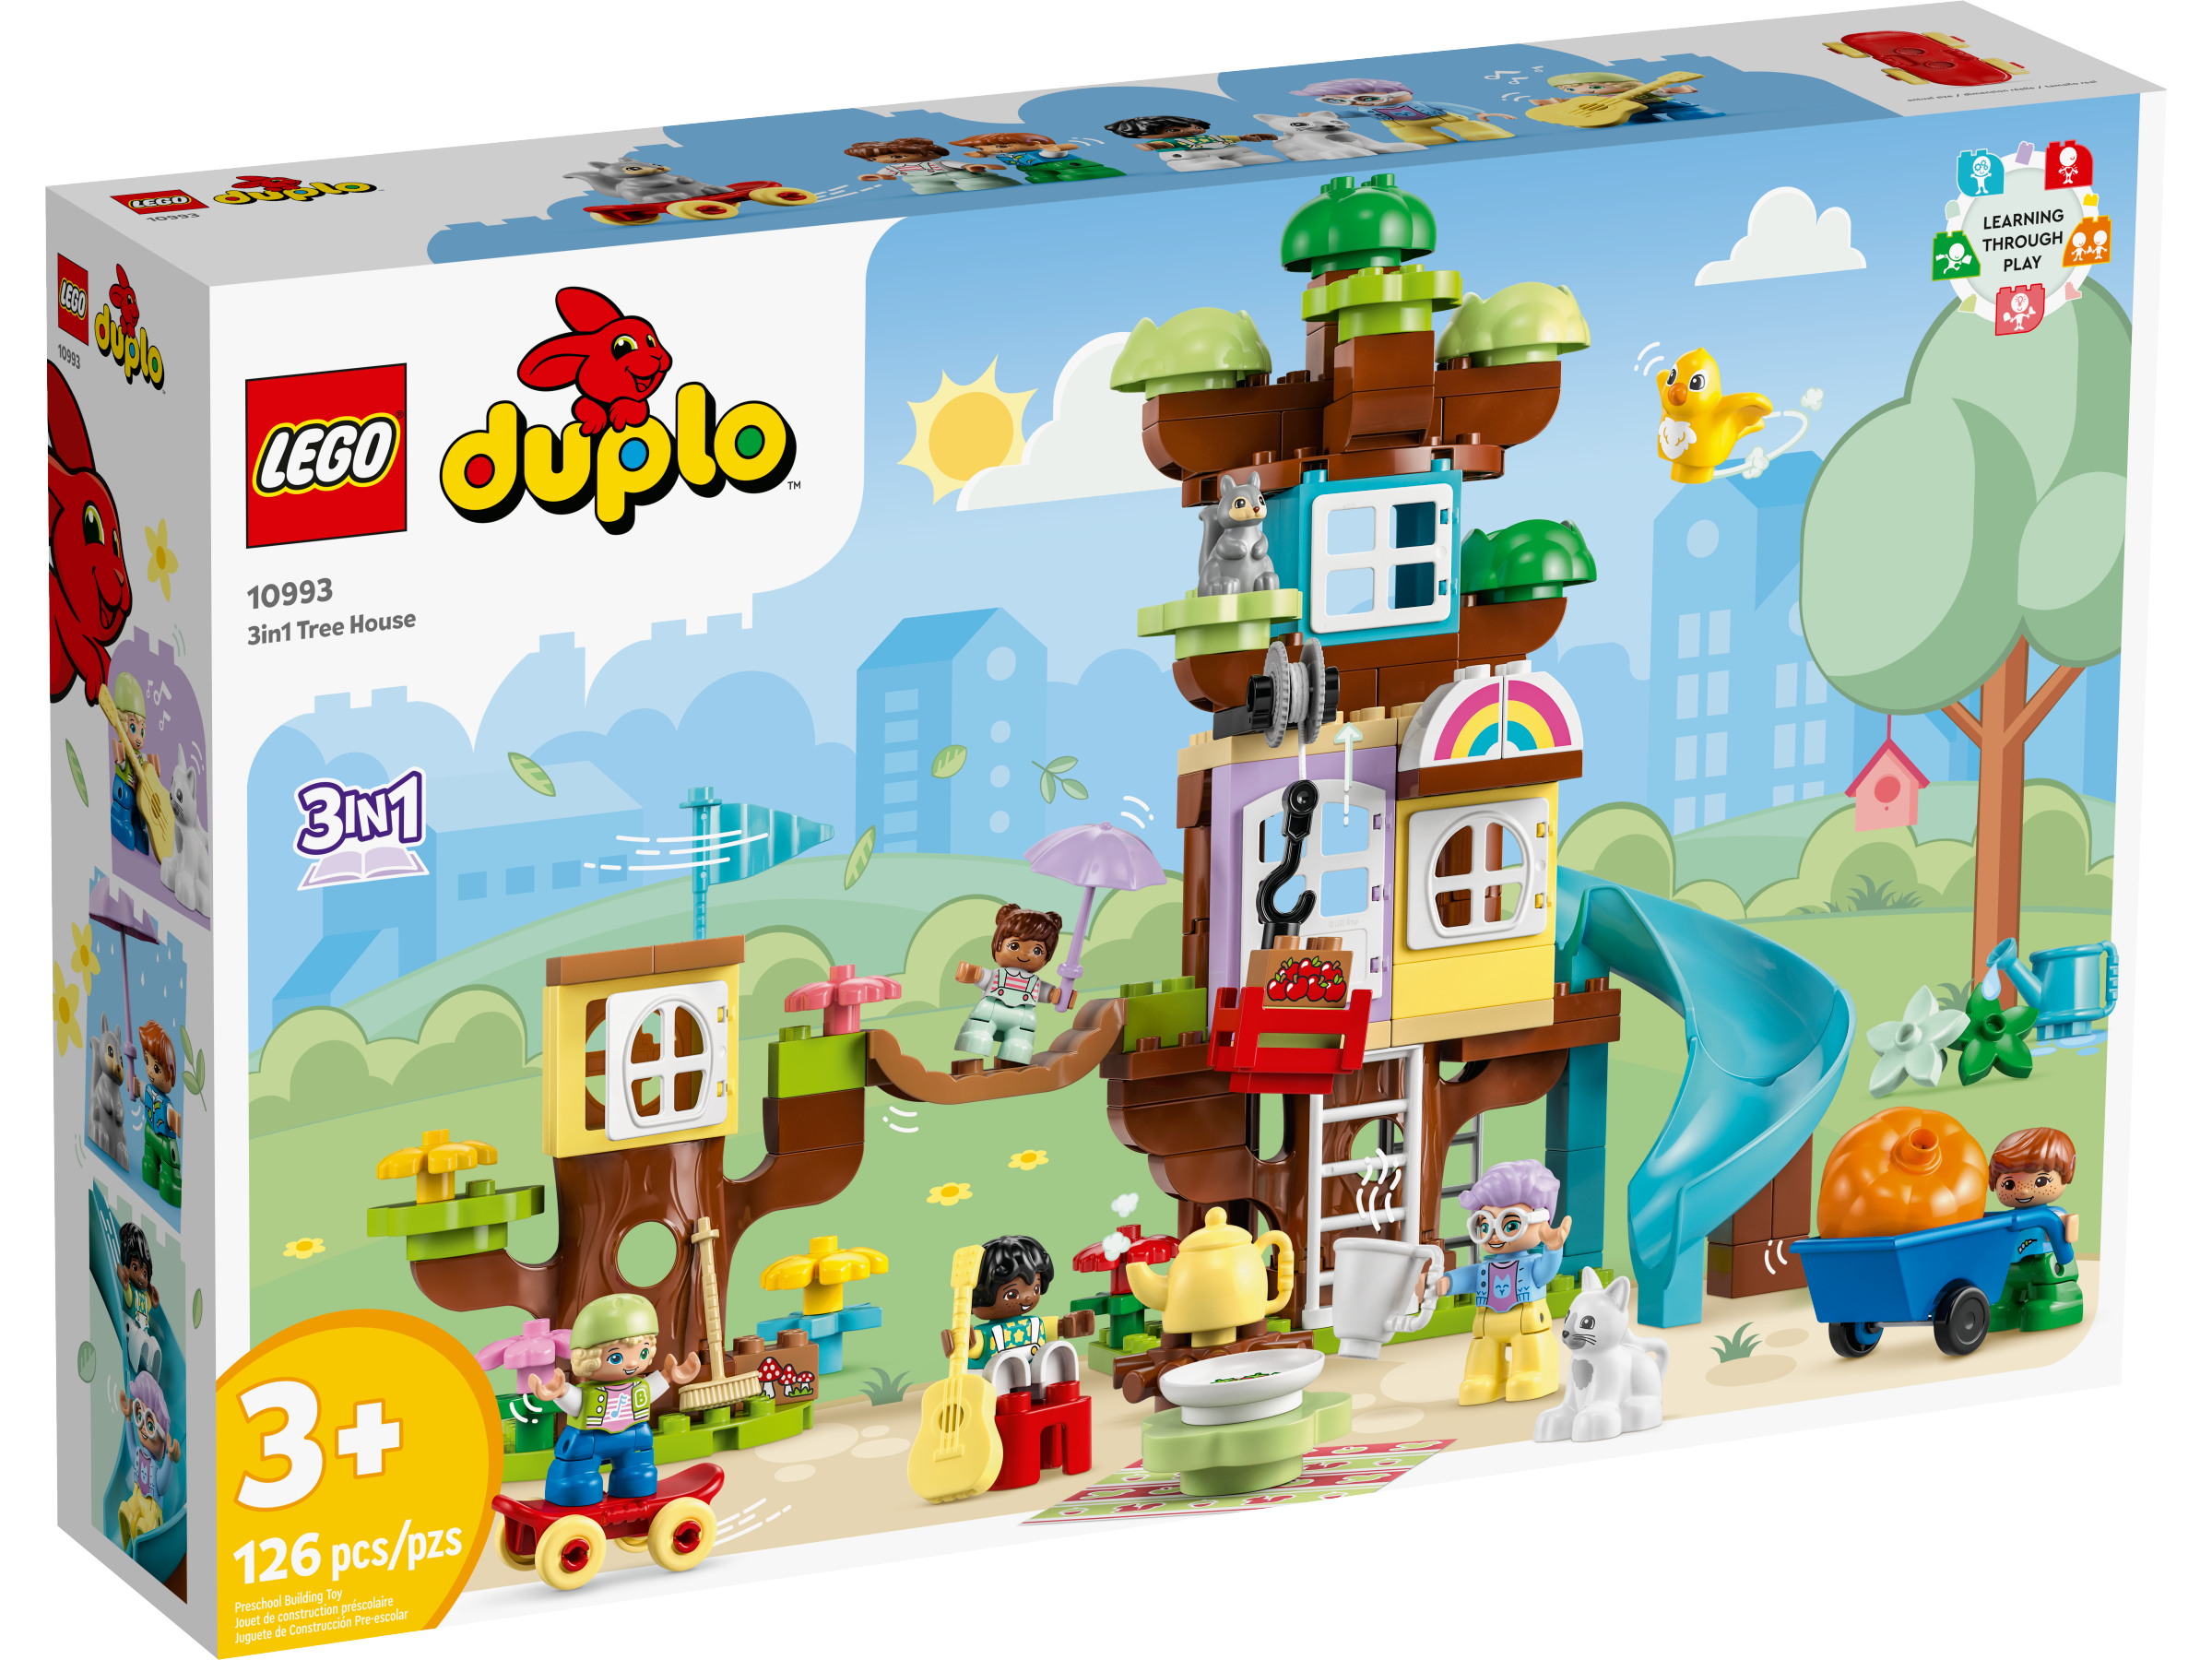 Jeux et Jouets :: SEAU DE LEGO POUR ENFANTS DE PLUS 3 ANS